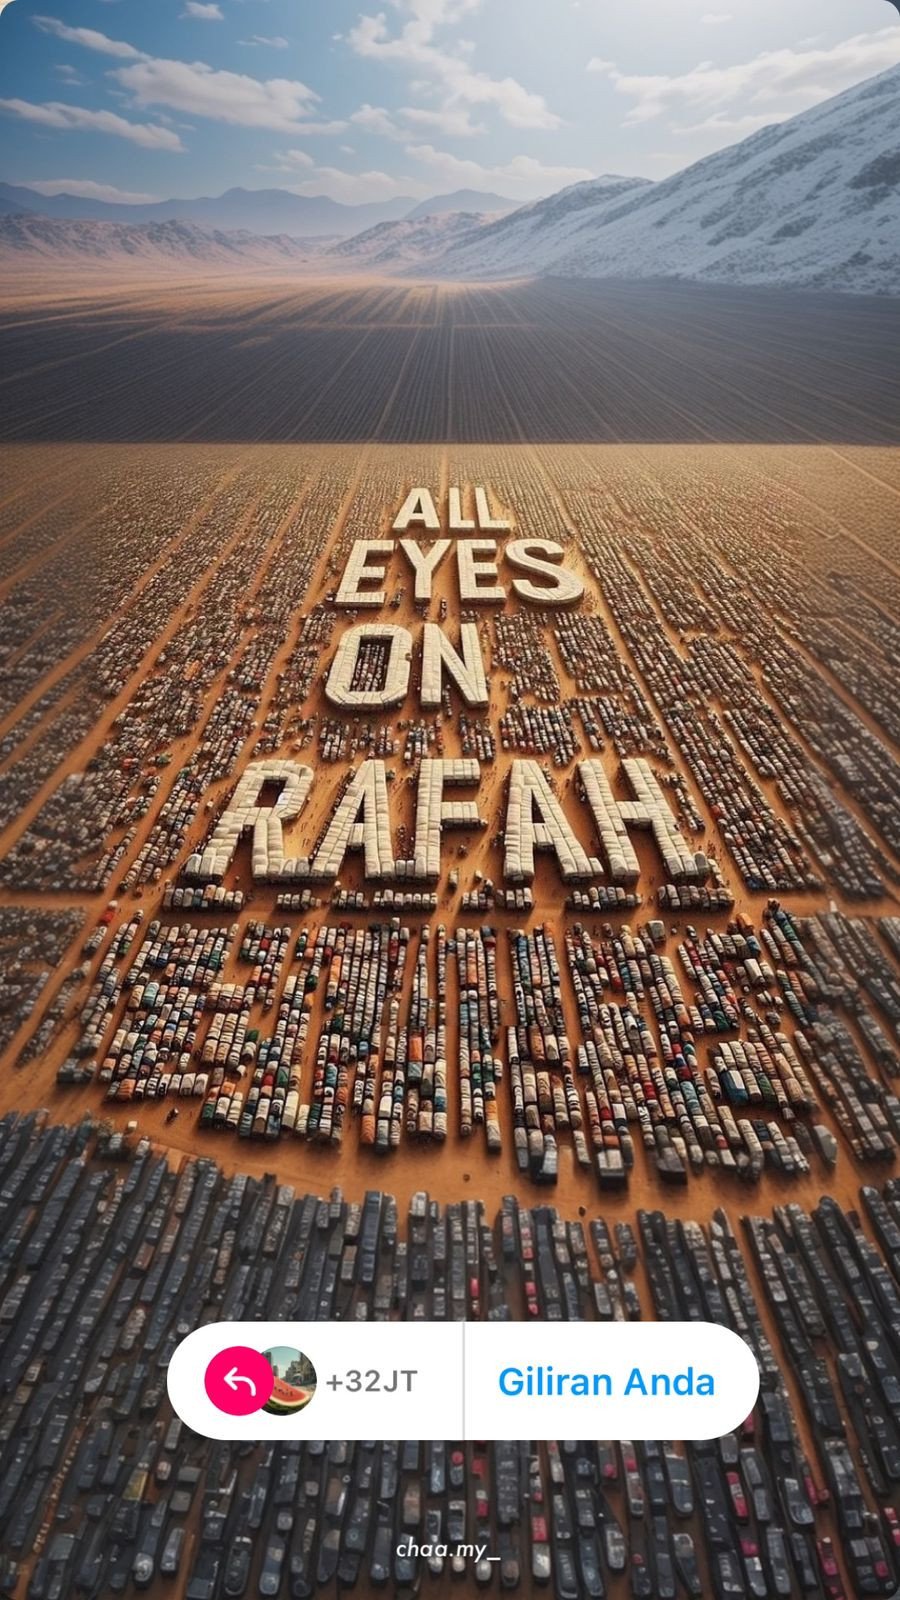 "All Eyes on Rafah" Ramaikan Sosial Media, Bersatu Melawan Kekerasan Zionis Israel di Palestina